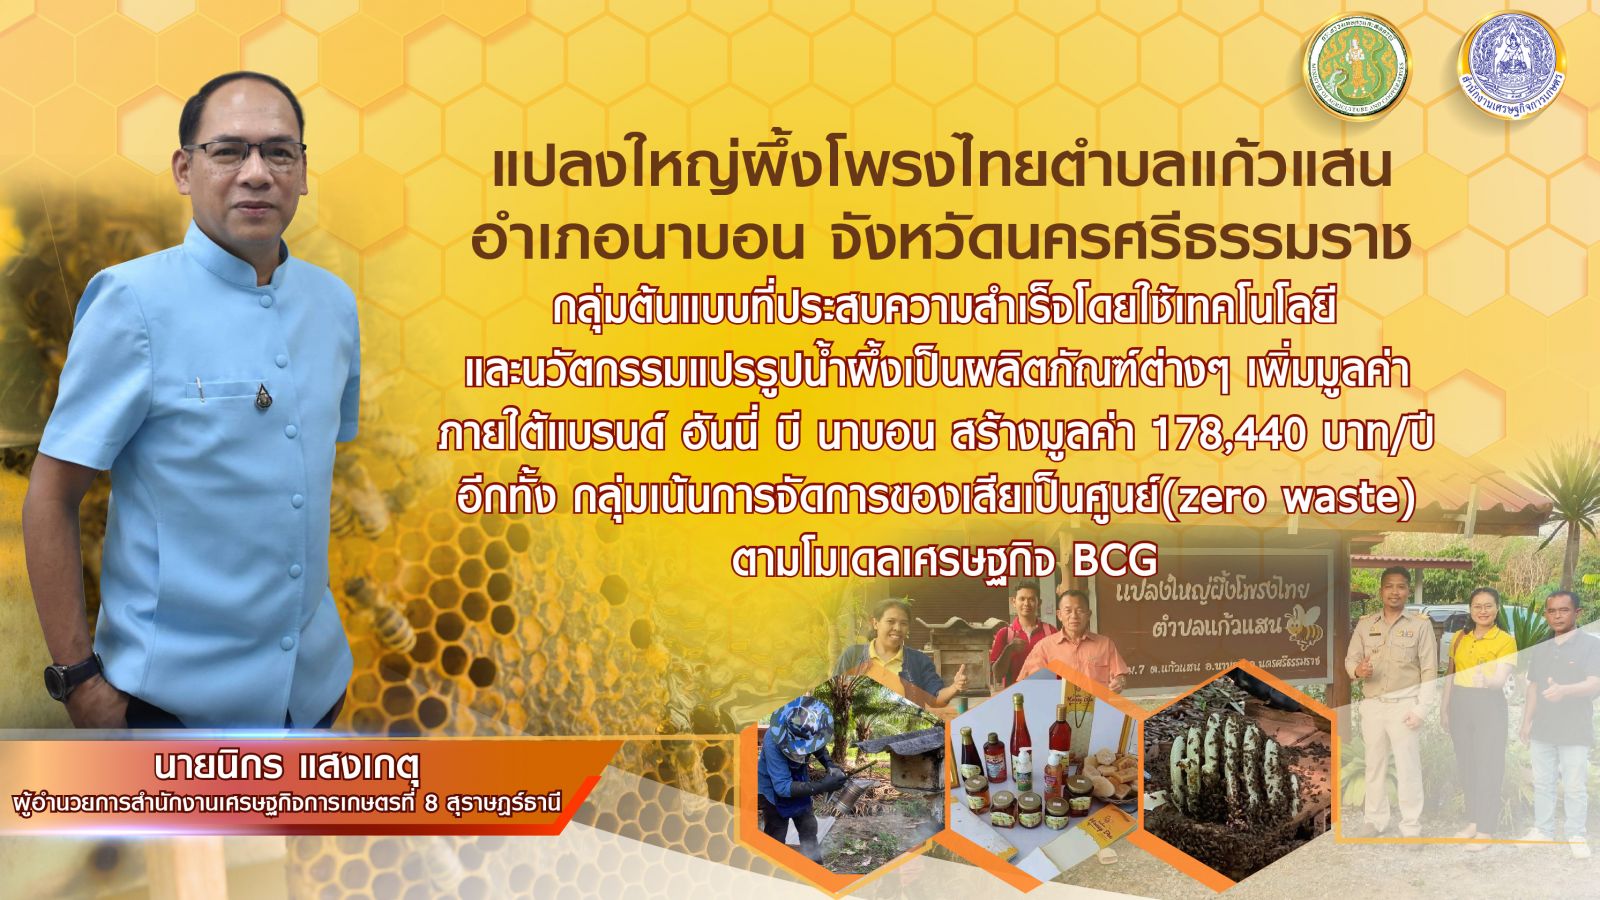 แปลงใหญ่ผึ้งโพรงไทยตำบลแก้วแสน อ.นาบอน จ.นครศรีธรรมราช สร้างมูลค่าผลผลิตจากการเลี้ยงผึ้ง สู่รายได้ปีละ 178,440 บาท